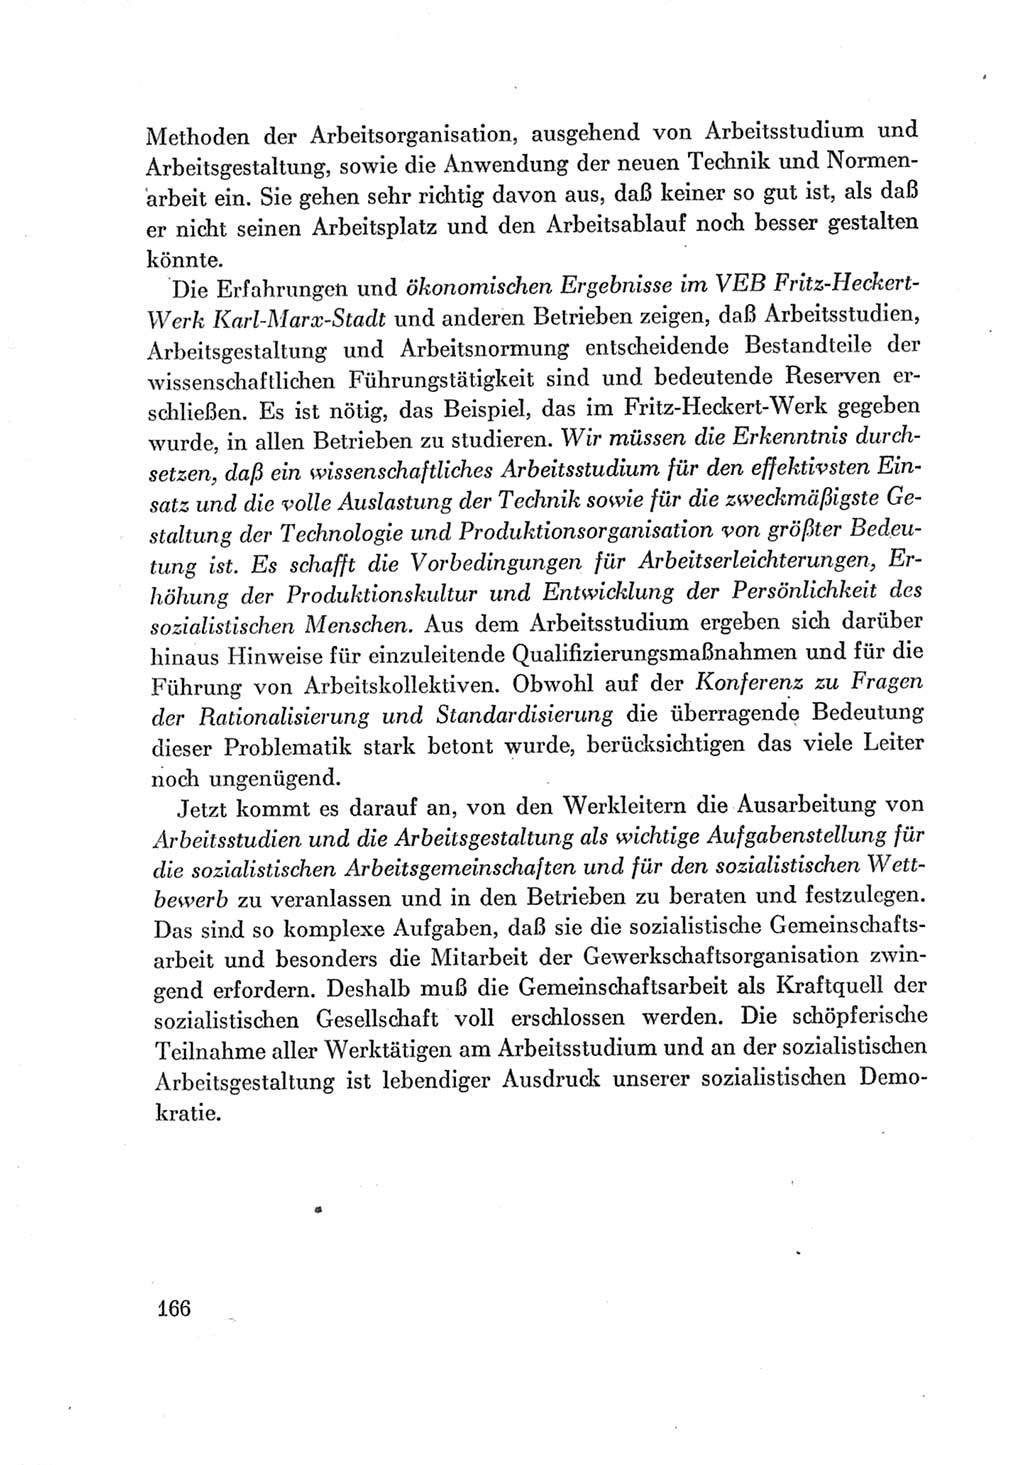 Protokoll der Verhandlungen des Ⅶ. Parteitages der Sozialistischen Einheitspartei Deutschlands (SED) [Deutsche Demokratische Republik (DDR)] 1967, Band Ⅰ, Seite 166 (Prot. Verh. Ⅶ. PT SED DDR 1967, Bd. Ⅰ, S. 166)